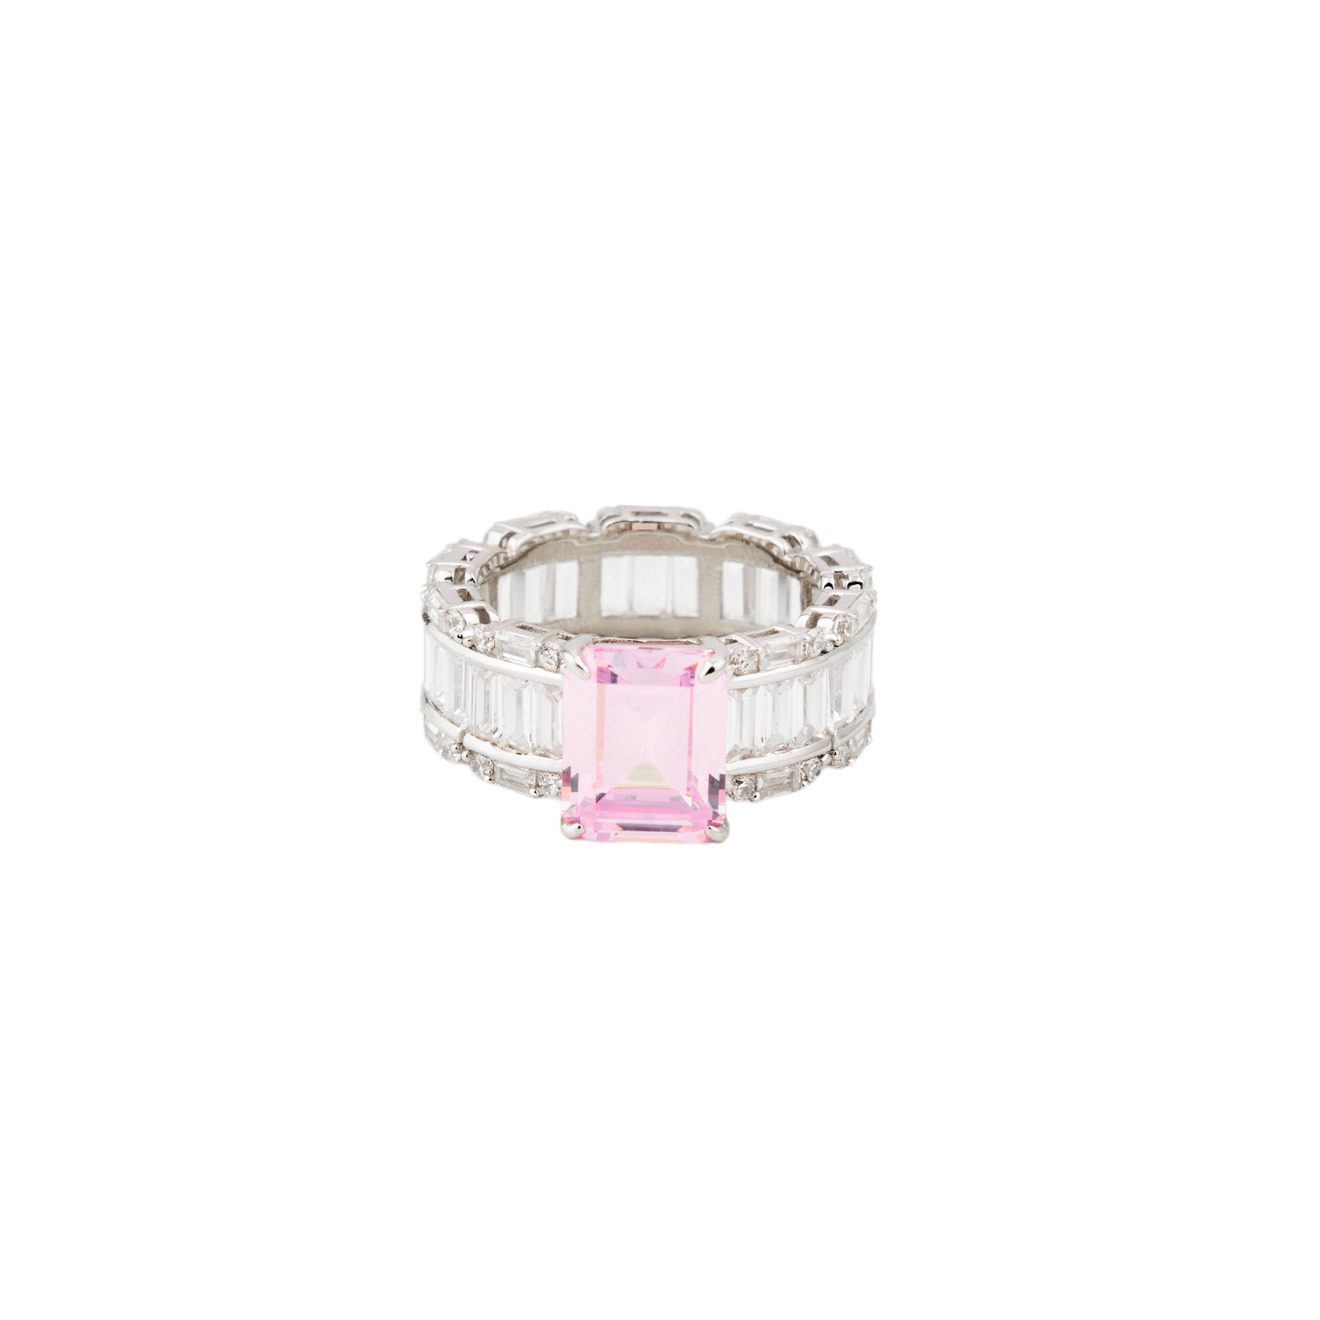 Holy Silver Кольцо из серебра с розовым кристаллом и паве из белых кристаллов огранки багет holy silver кольцо дорожка из розовых и белых кристаллов разной формы